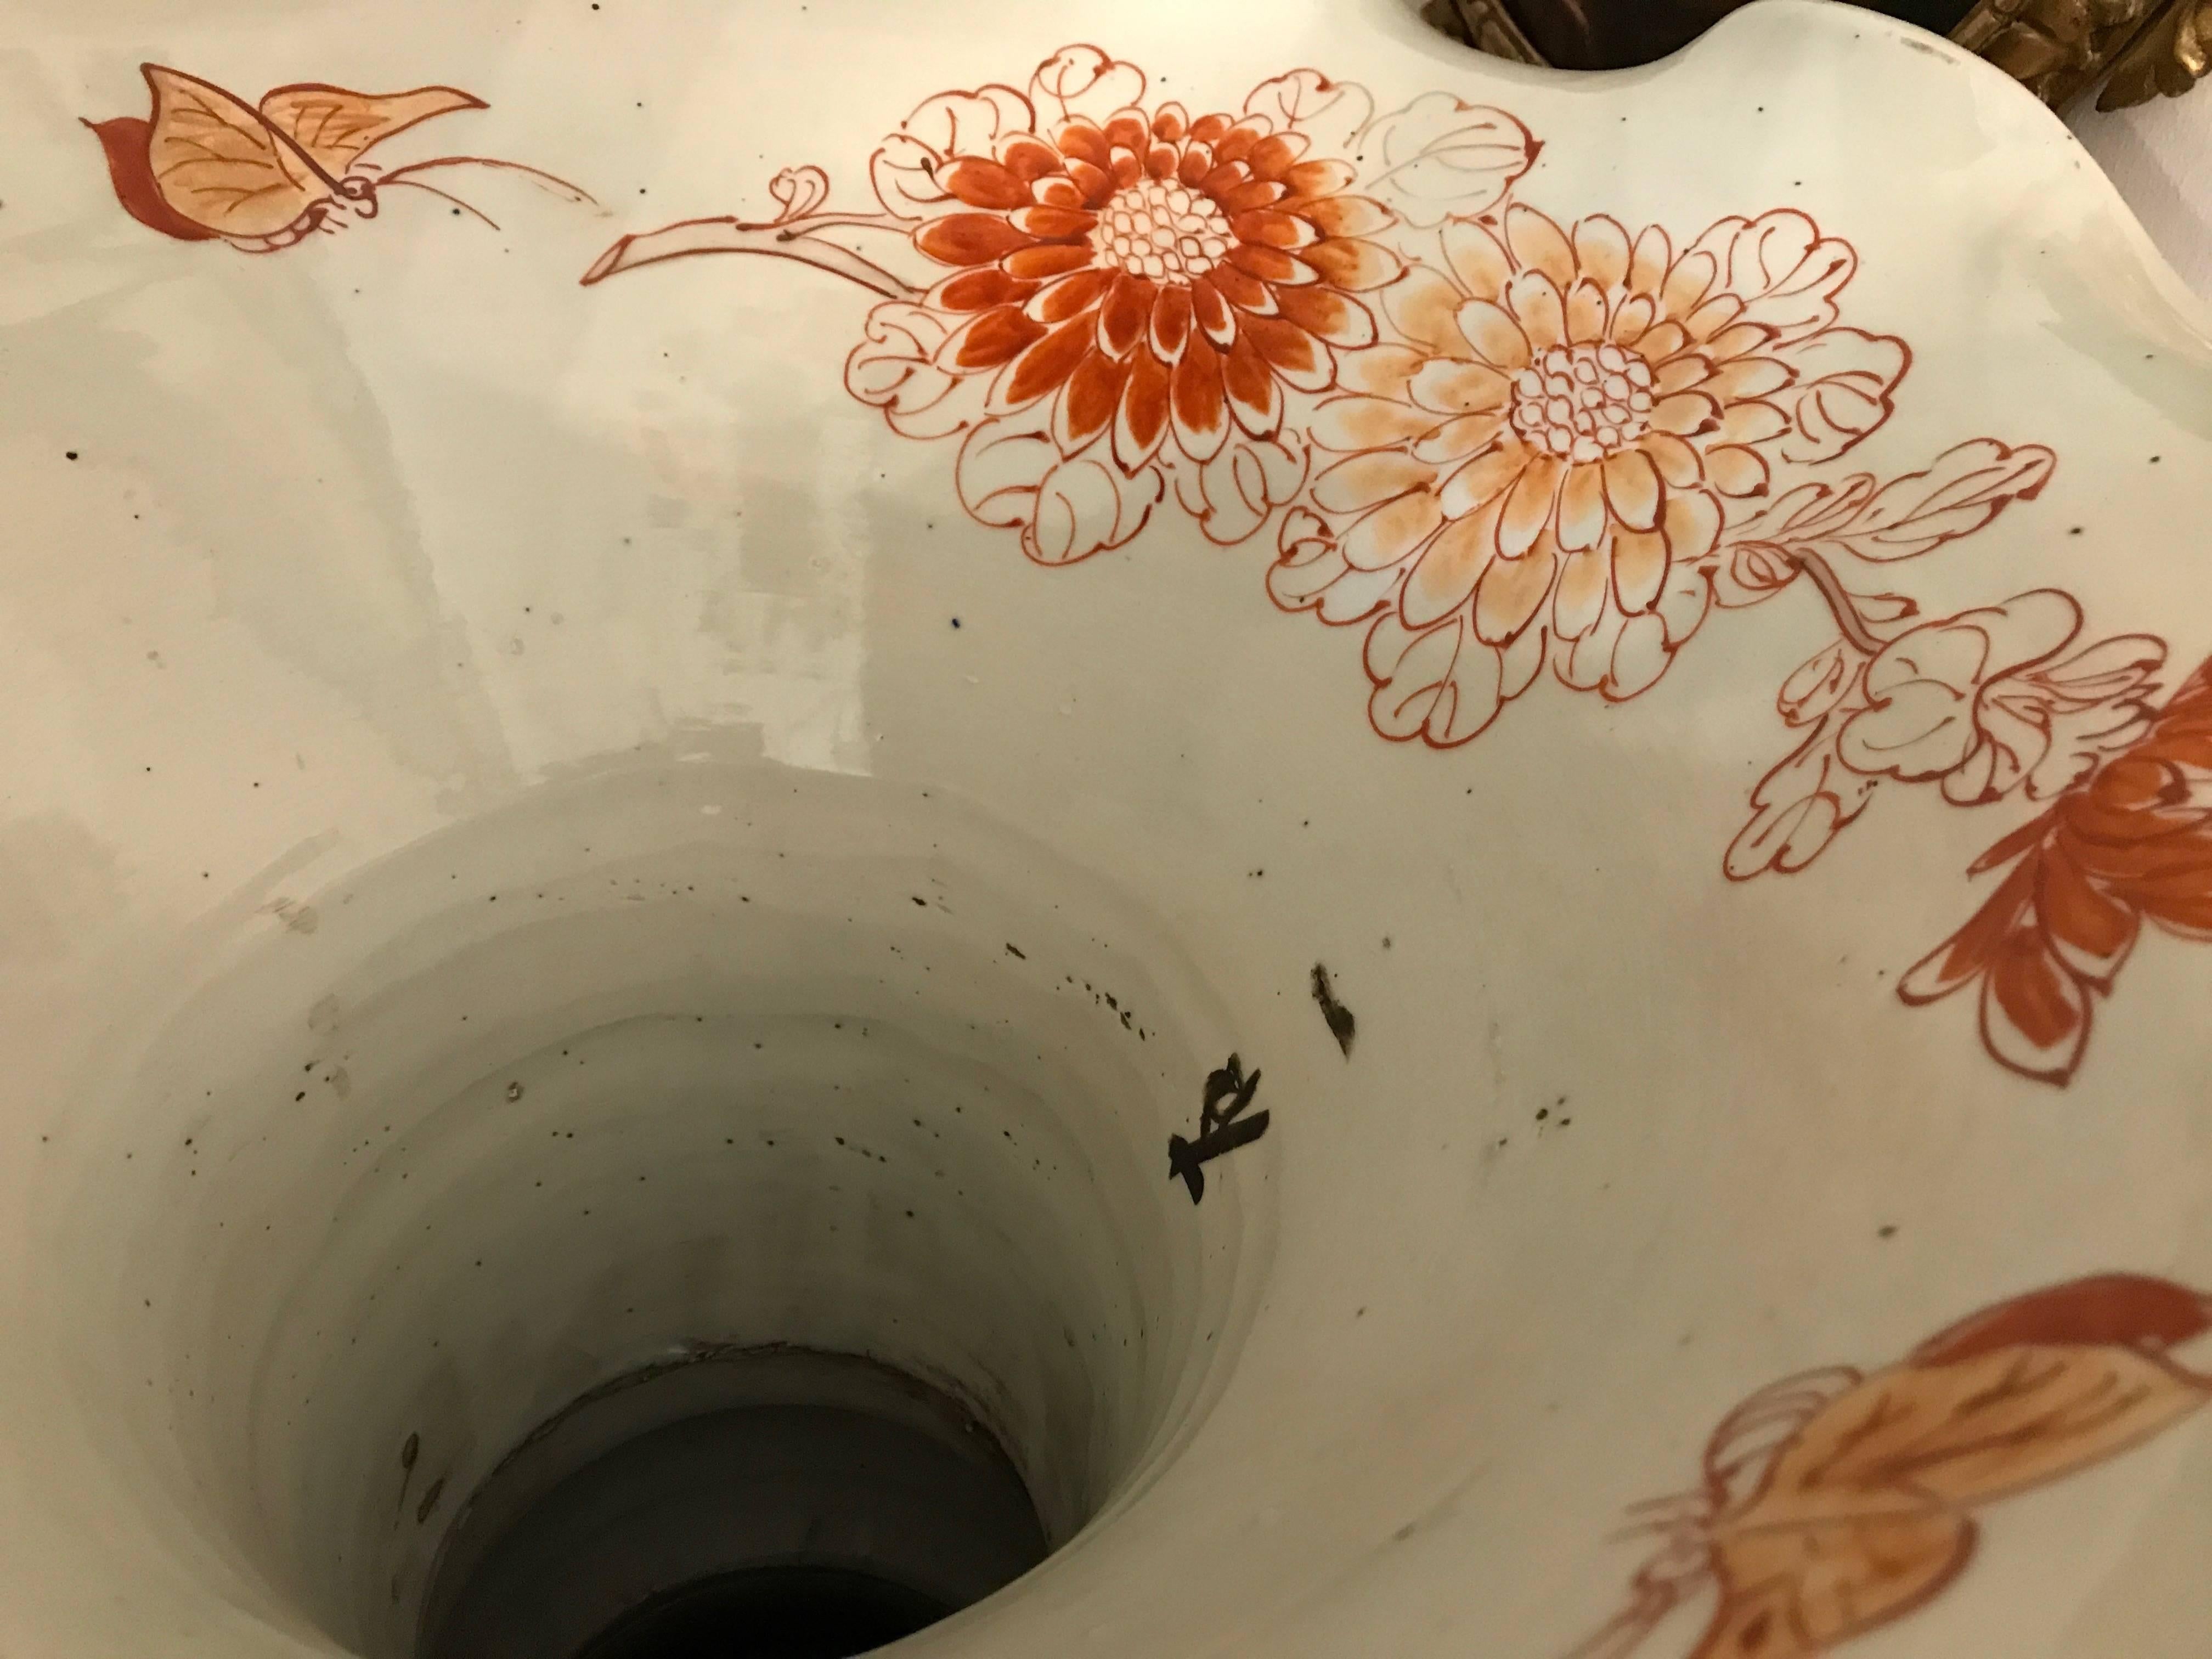 Pair of Large Imari Vases 19th Century Japanese Blue Red White Porcelain Vases 11